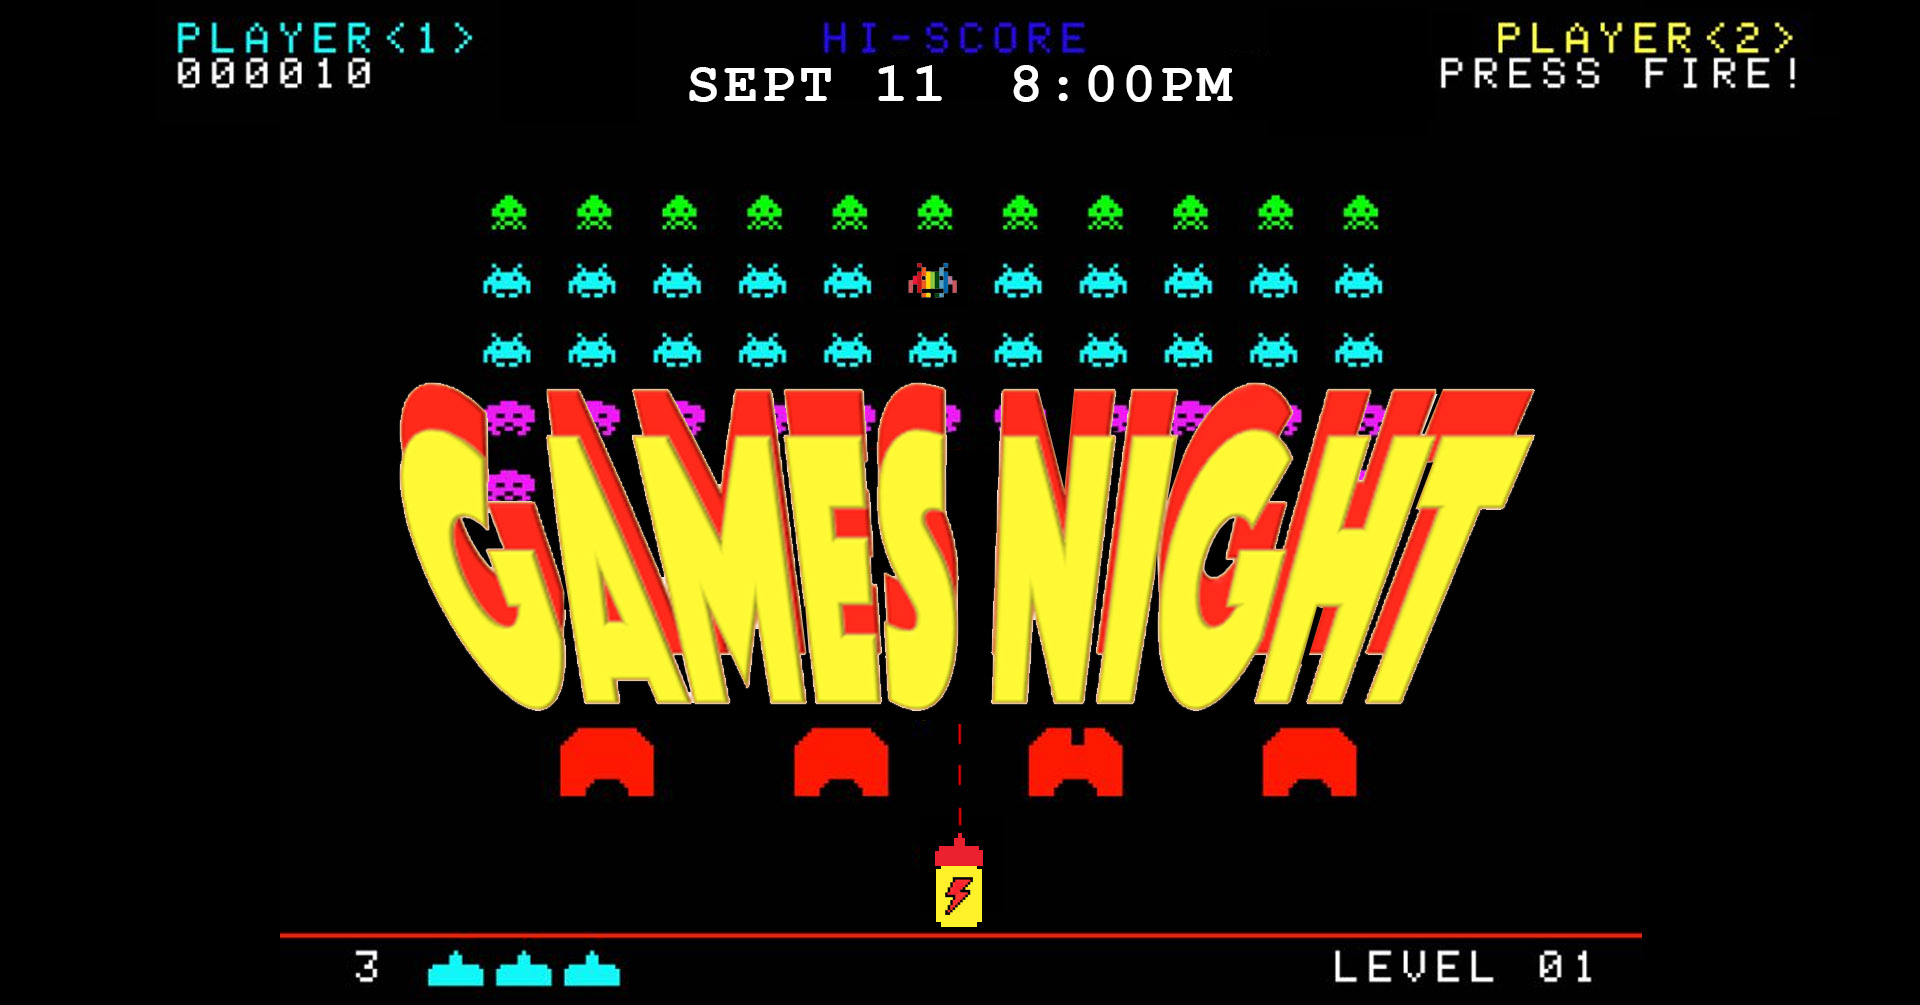 Poster for Men's Games Night on Sept 11